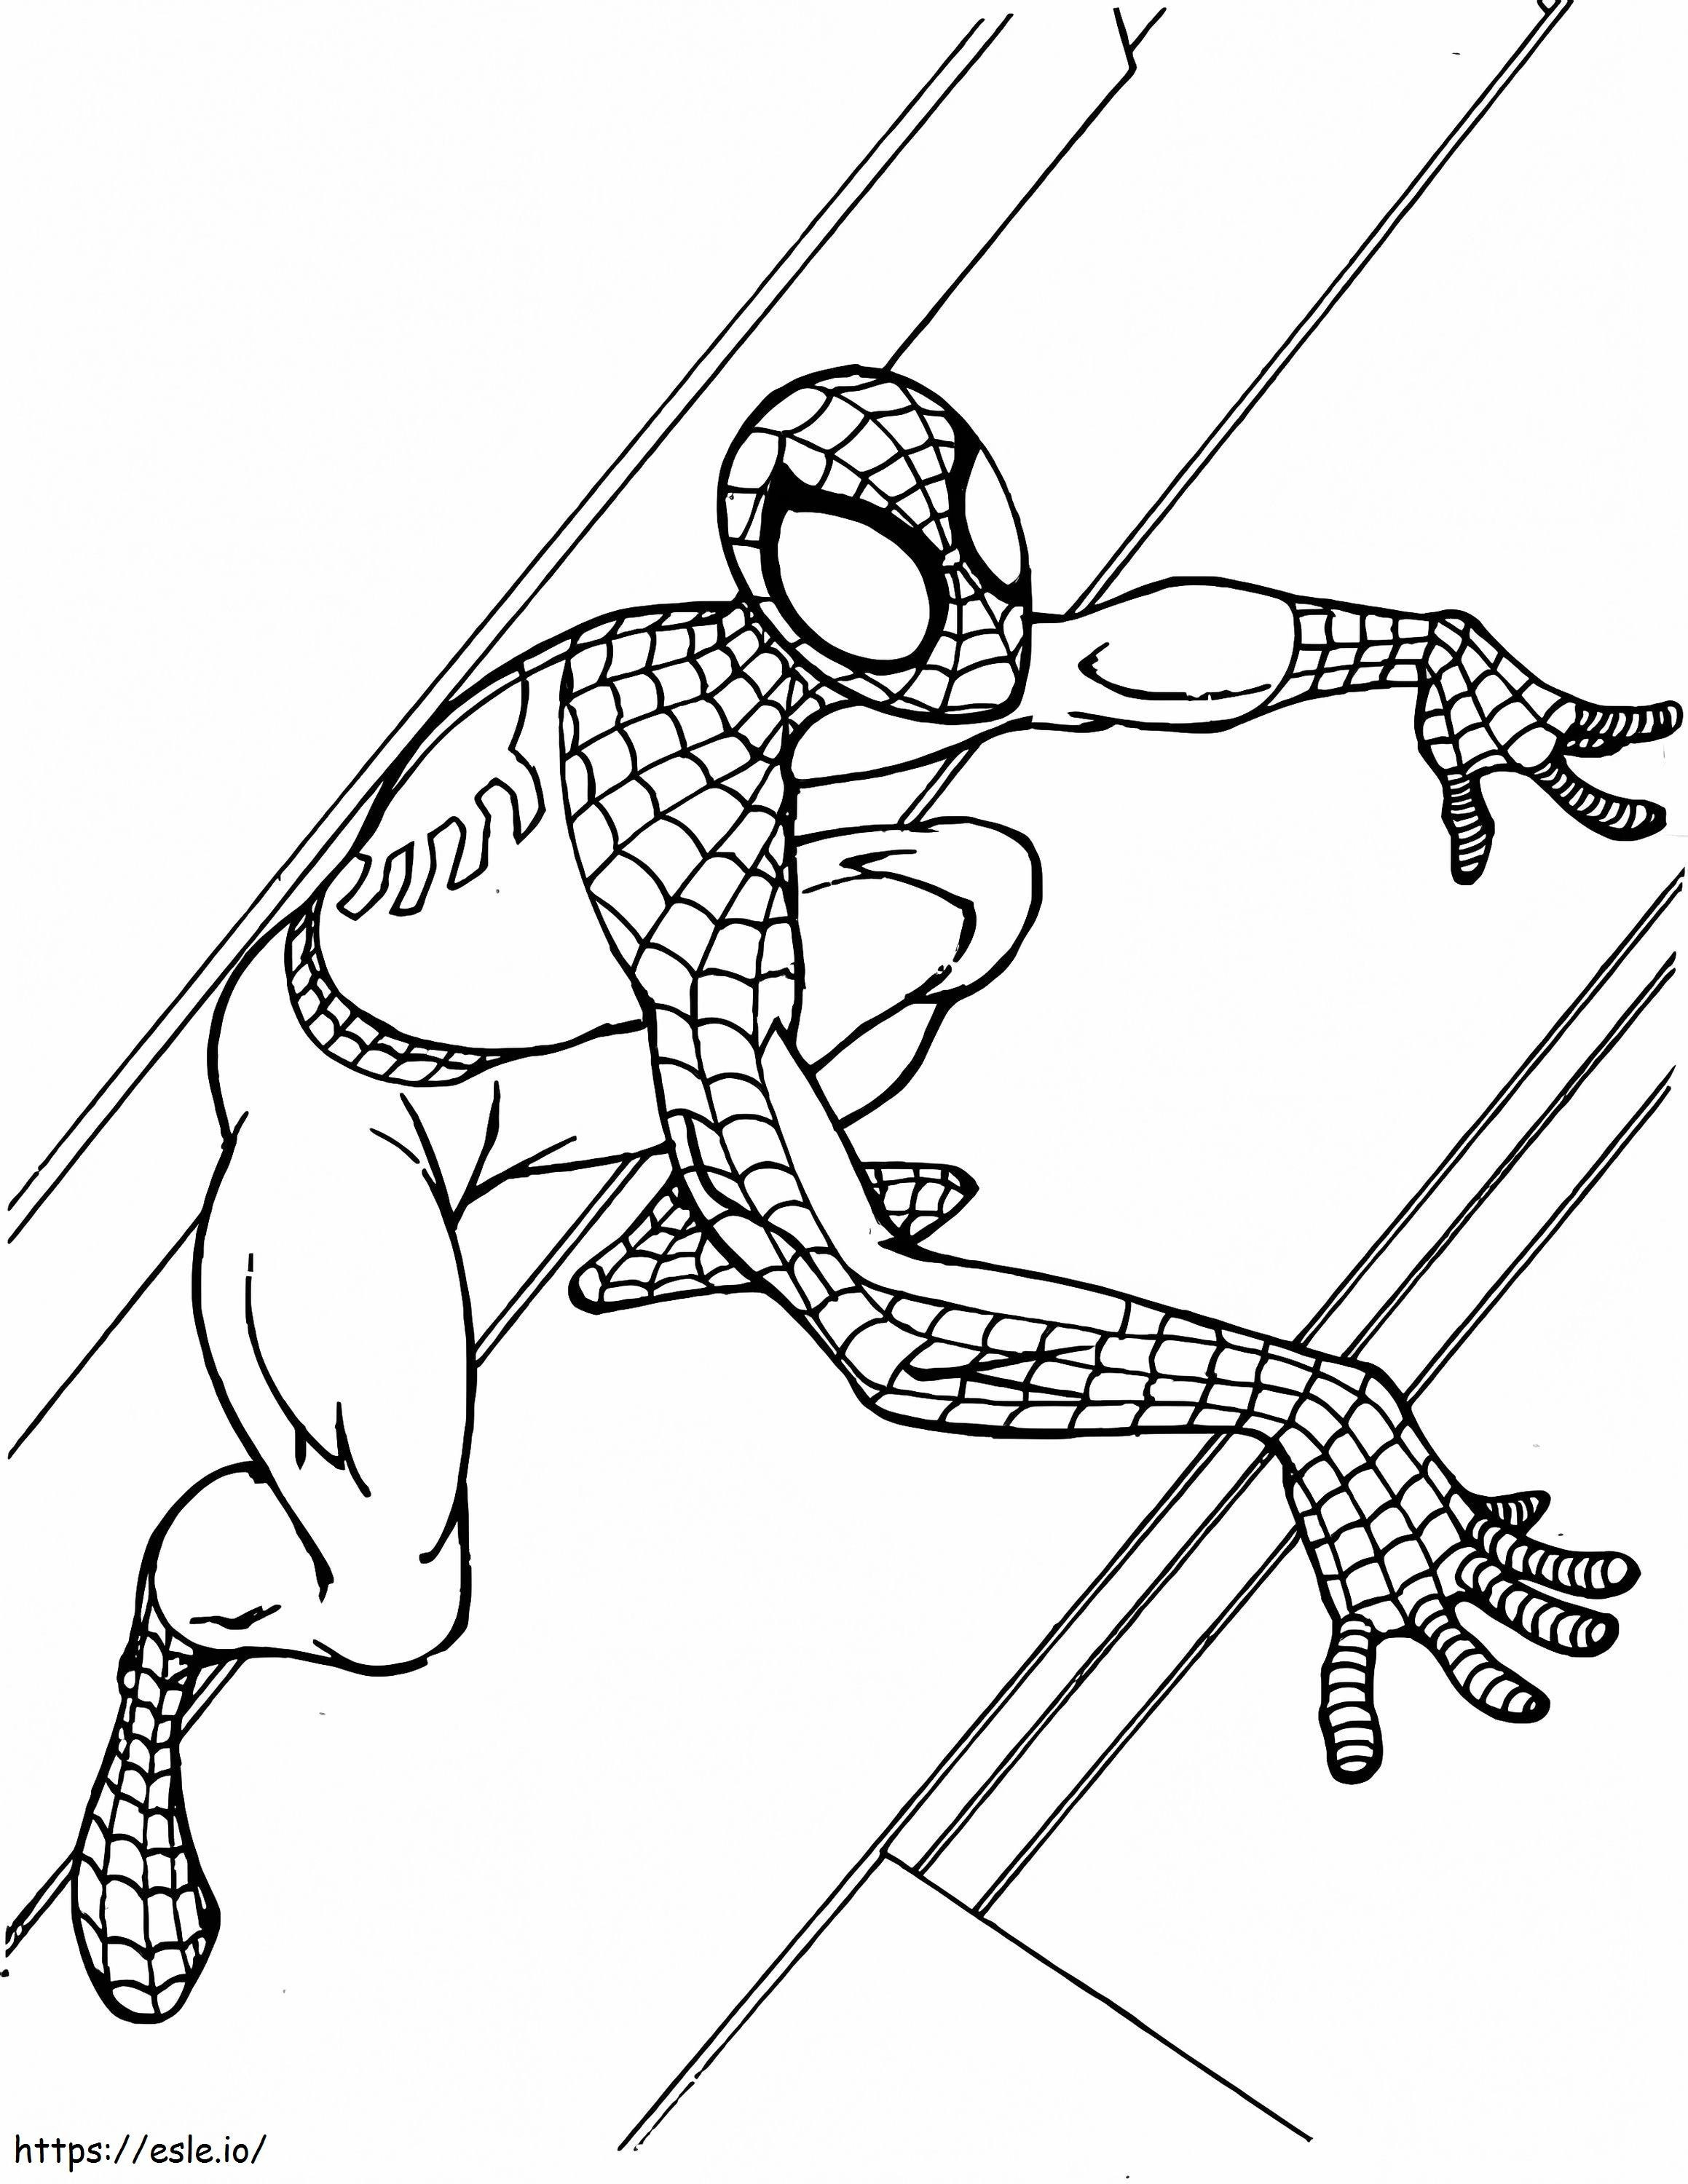 Homem-Aranha está escalando para colorir